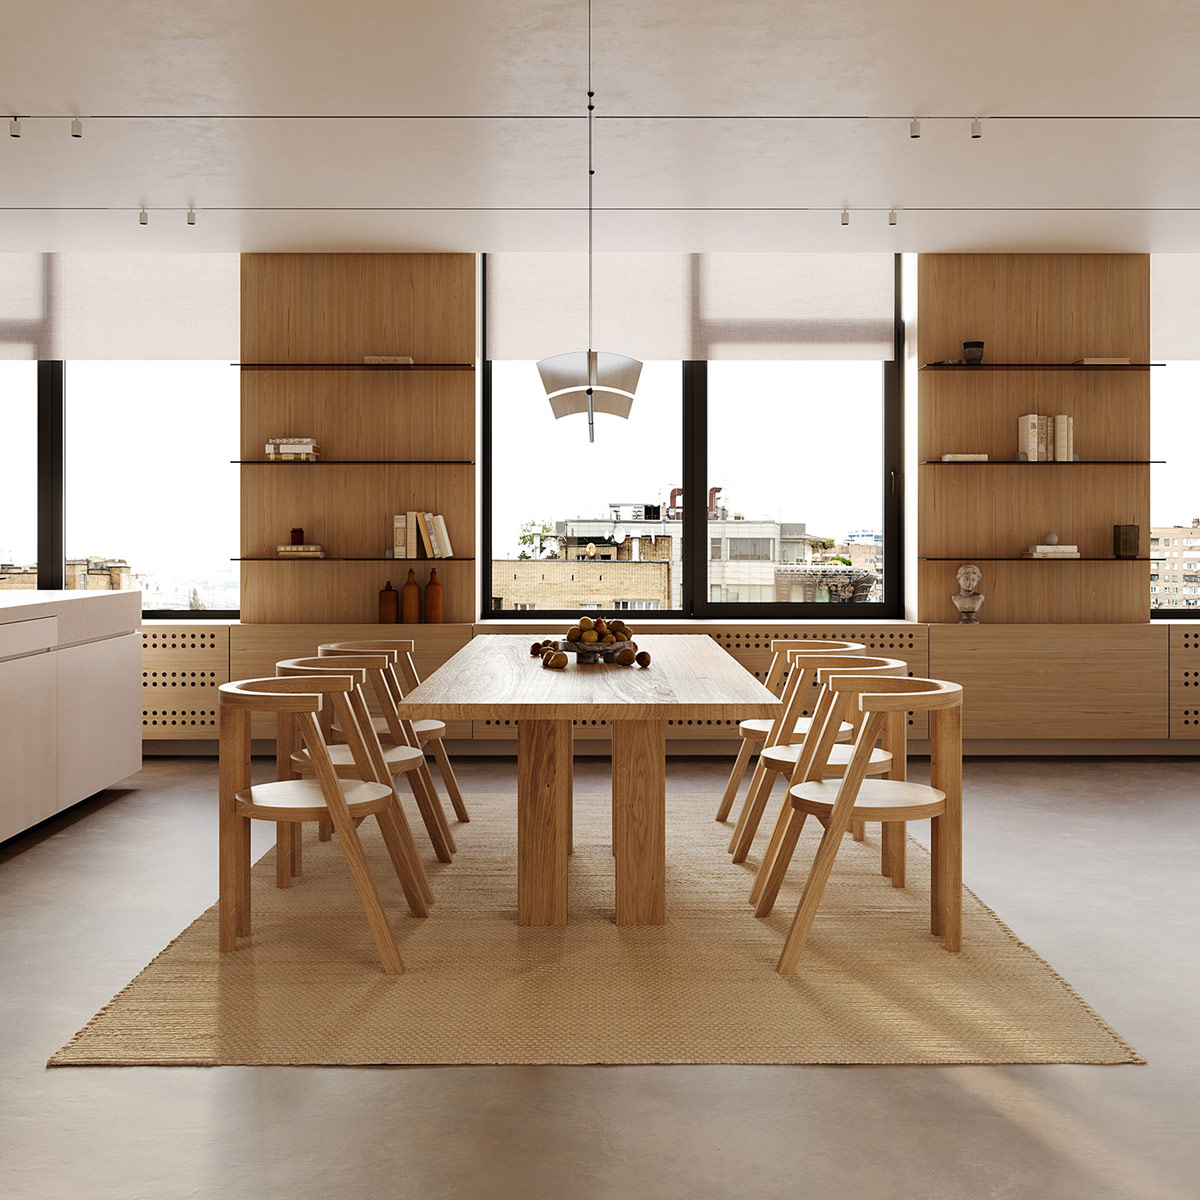 Mẫu thiết kế phòng bếp tích hợp phòng ăn hiện đại